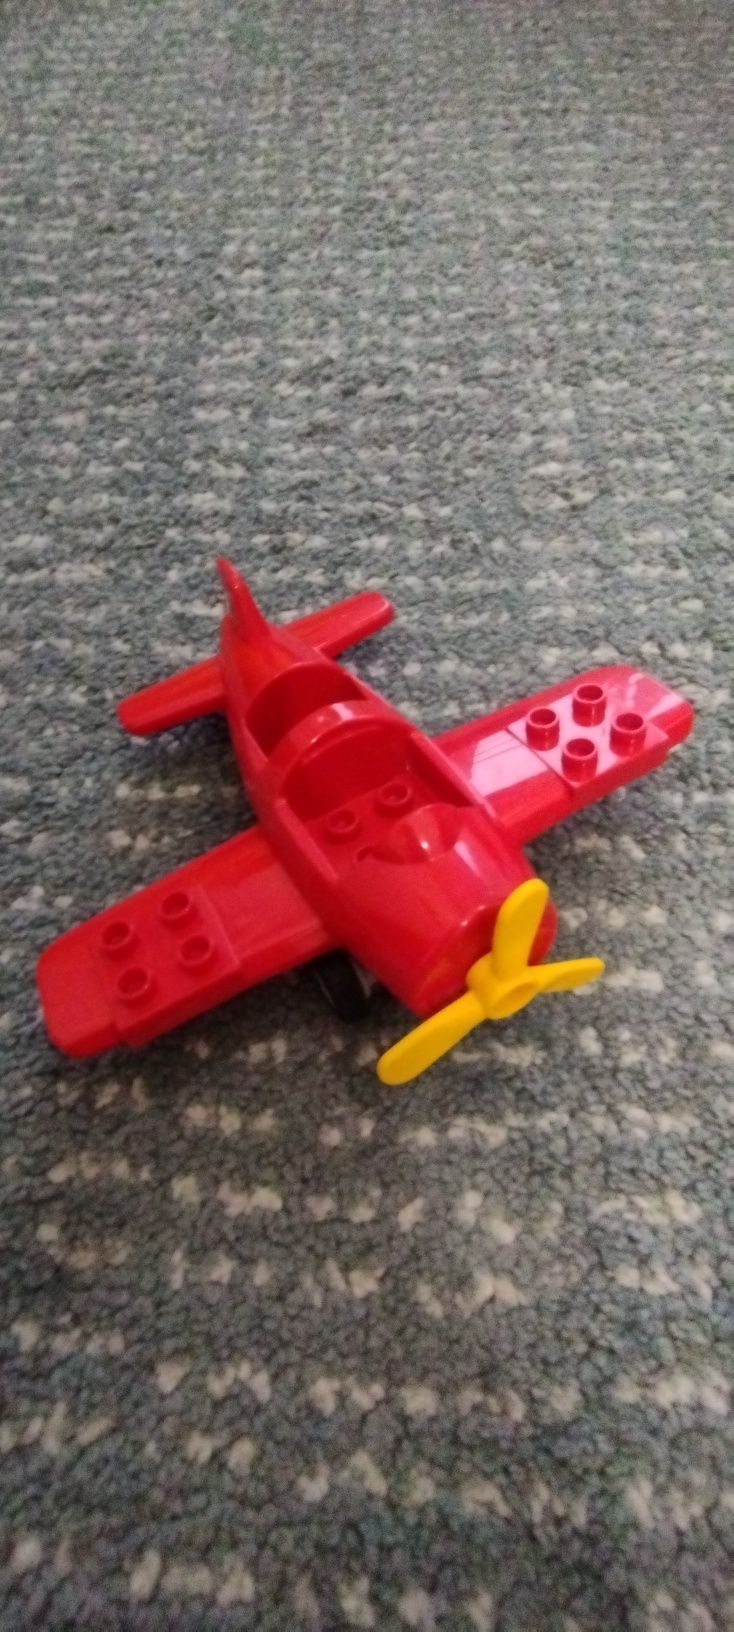 Samolot LEGO Duplo 5592